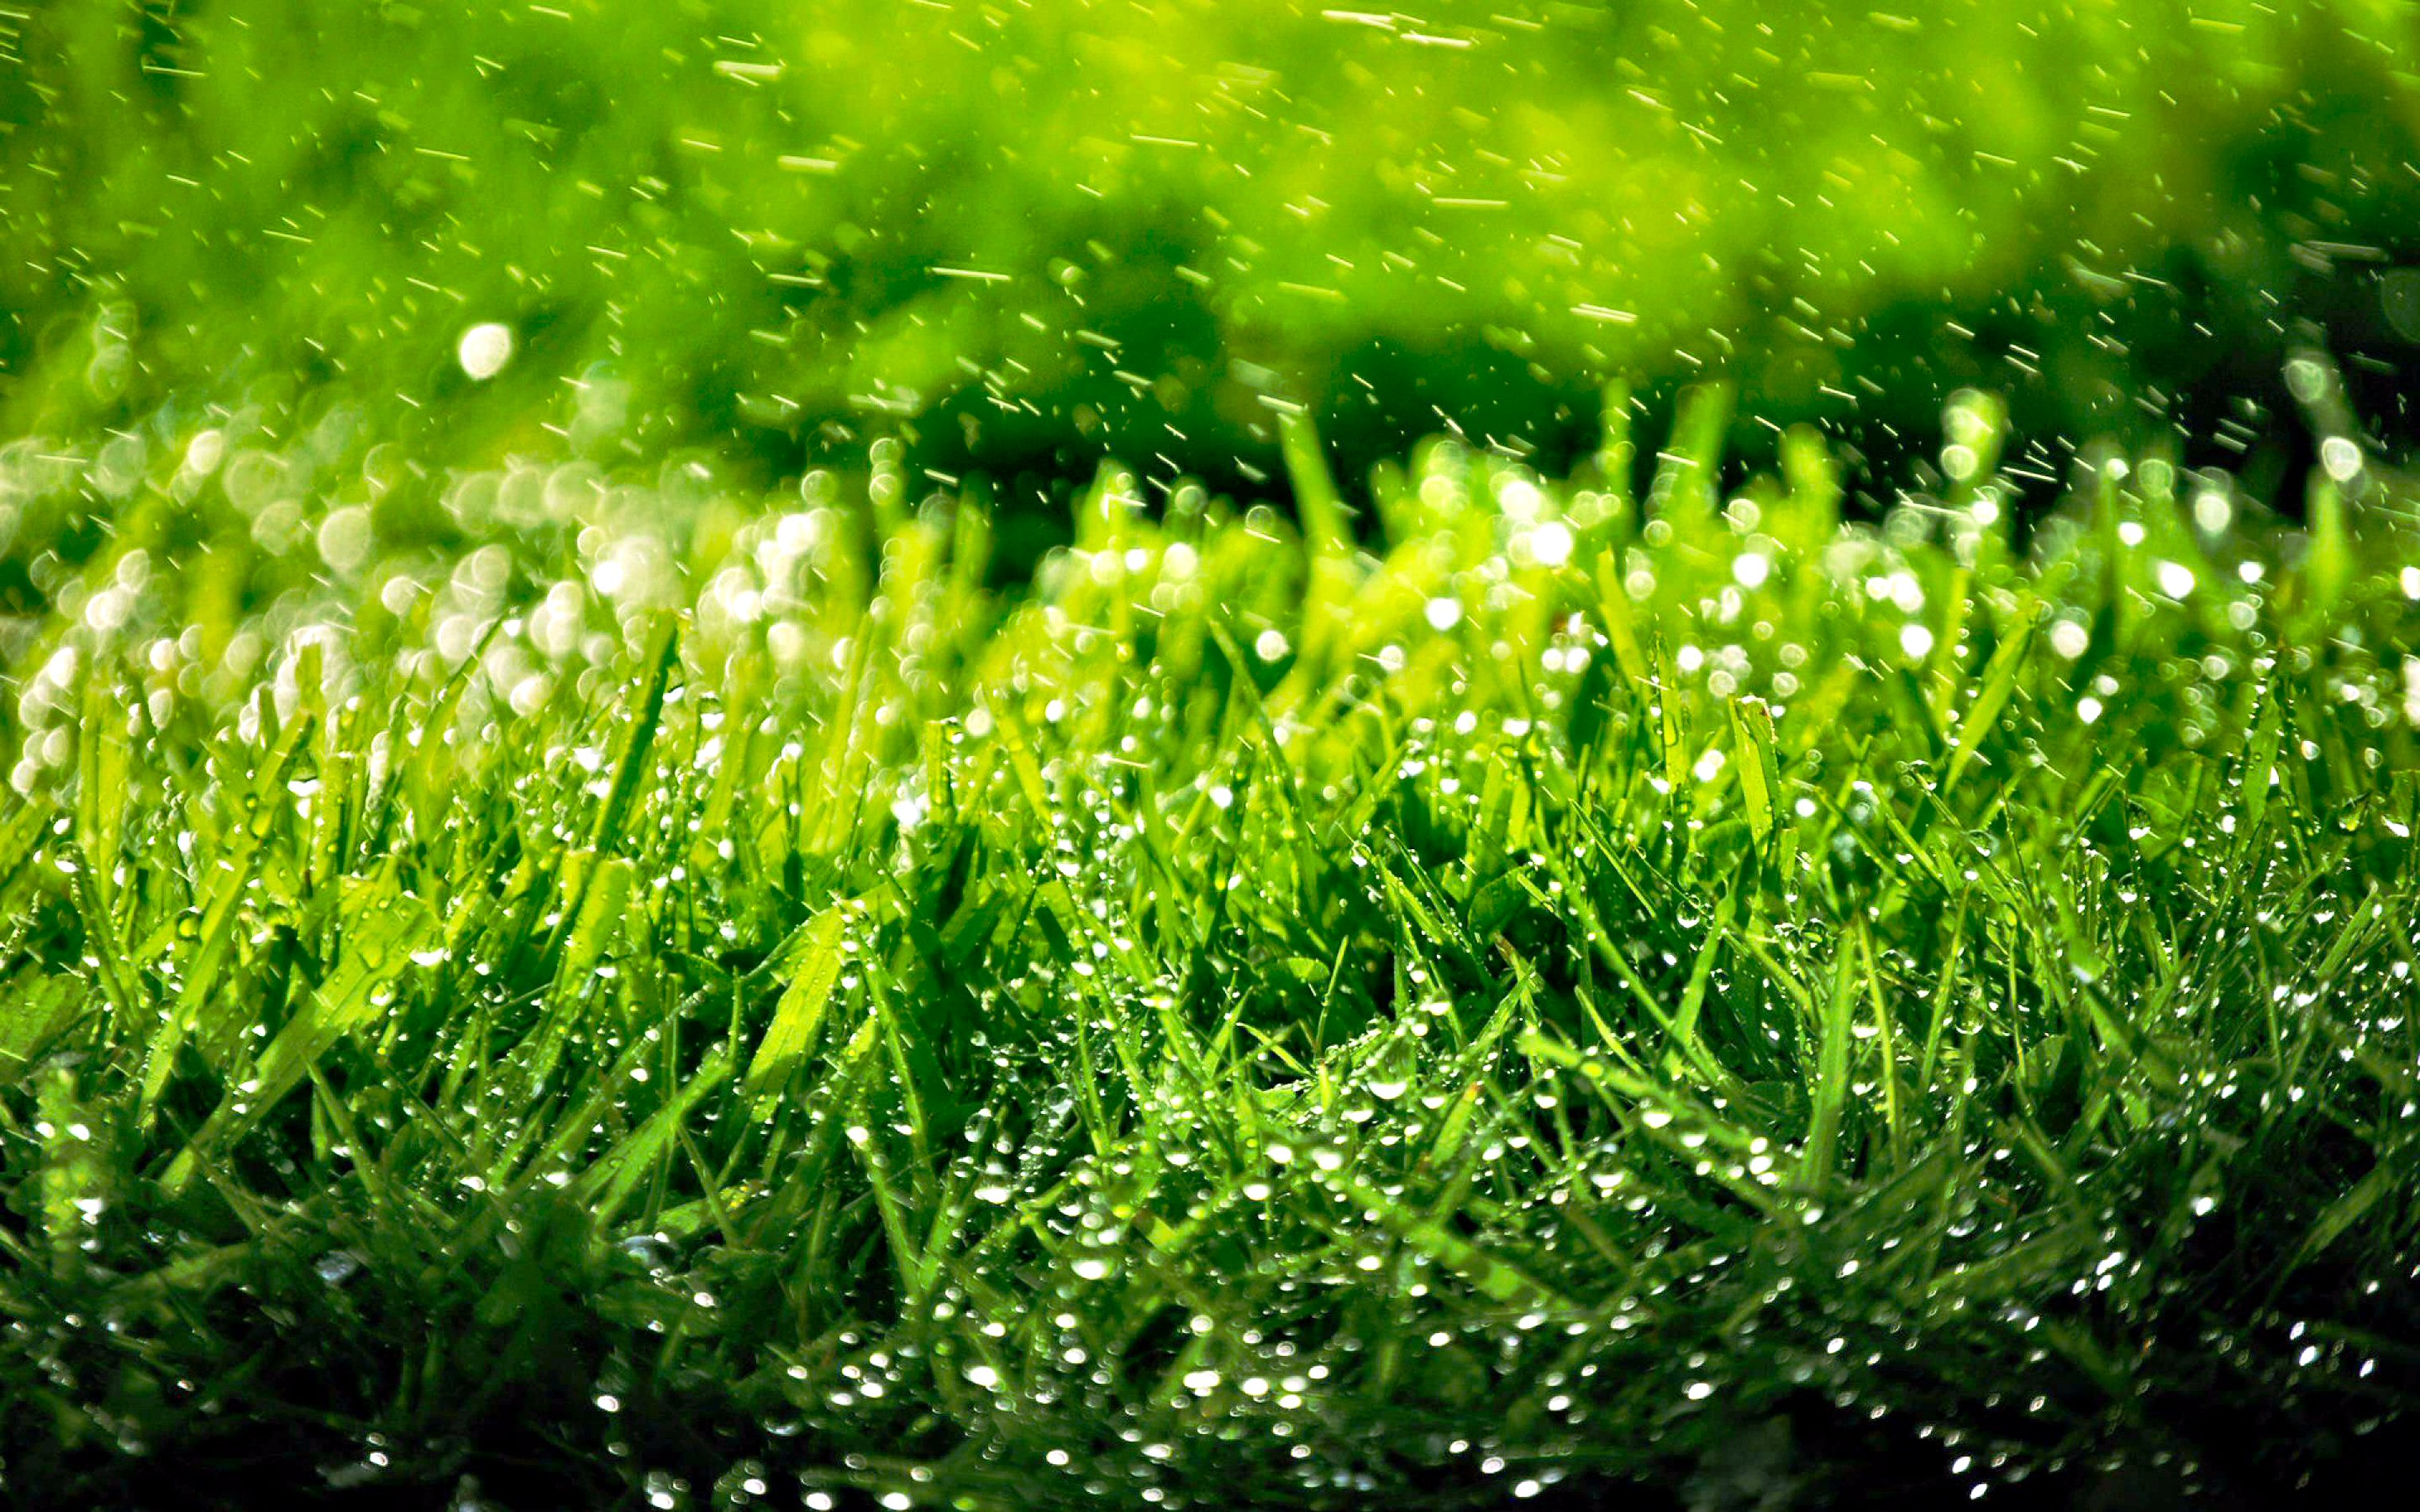 Скачать обои бесплатно Трава, Дождь, Зеленый, Фотография, Земля/природа, Капля Воды картинка на рабочий стол ПК